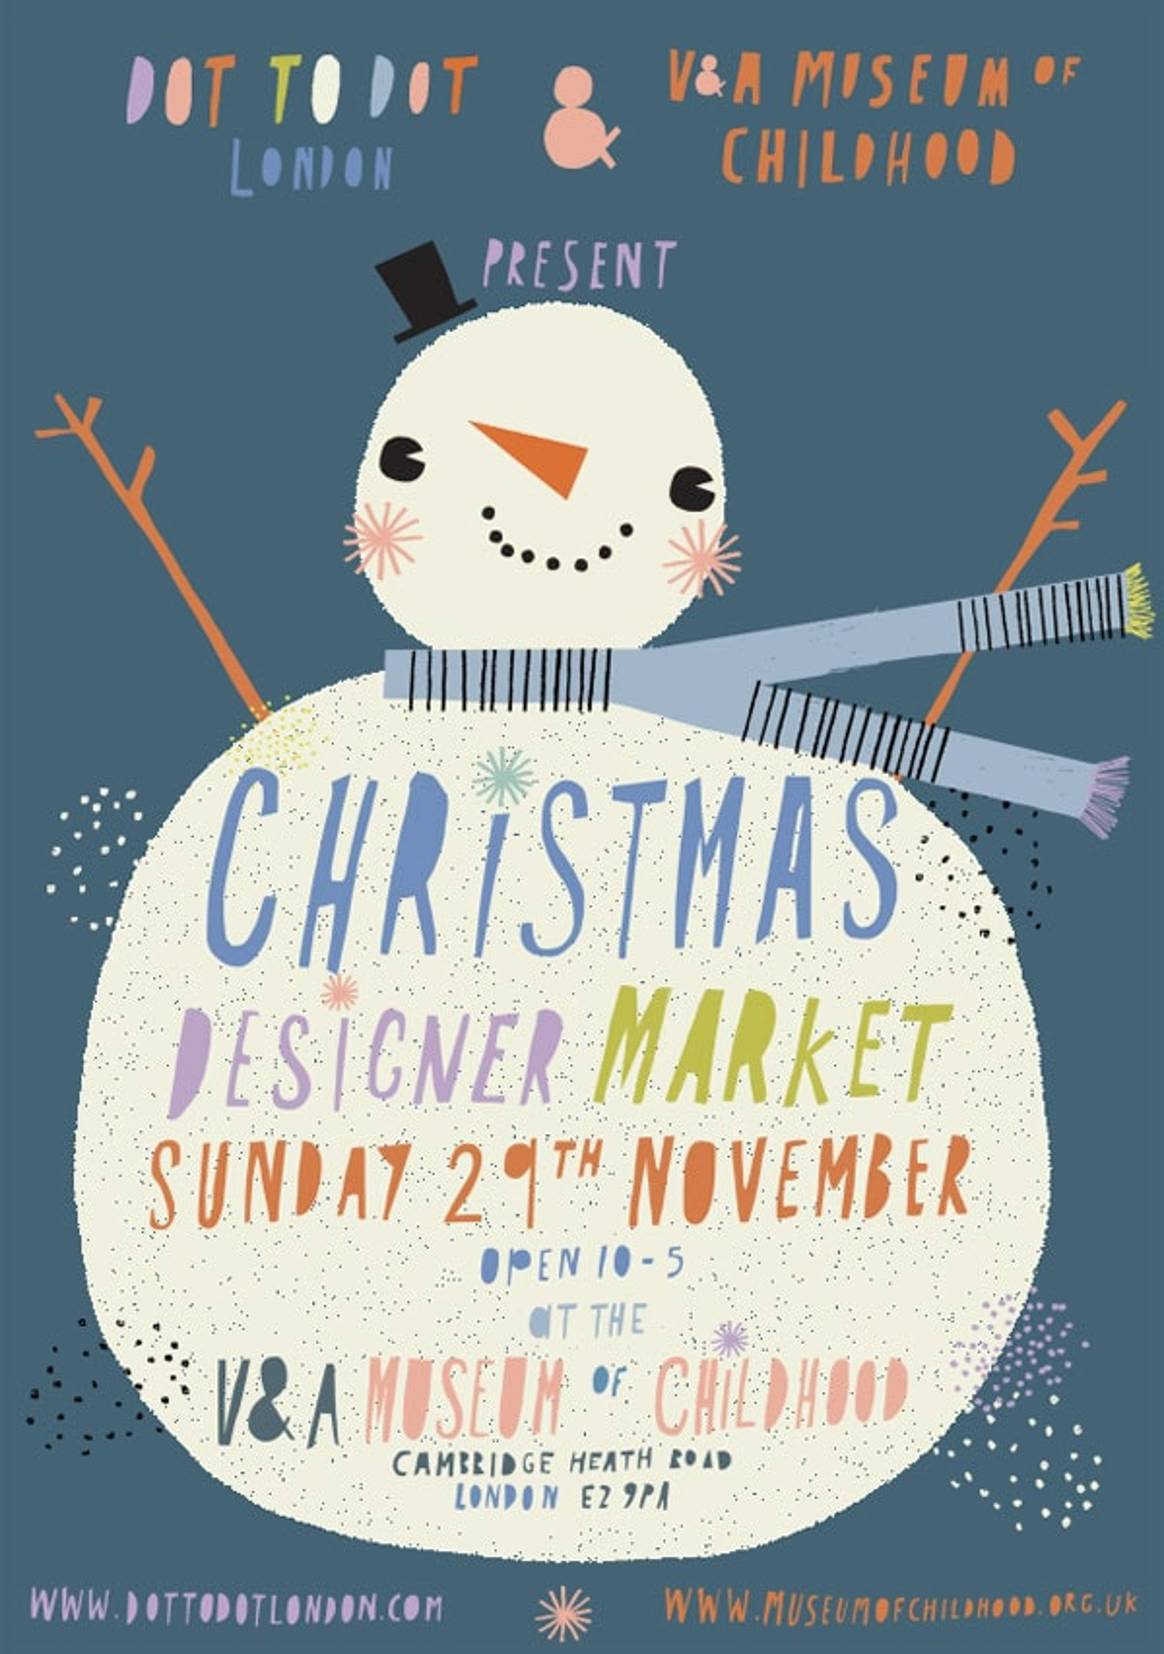 Shop 'til you drop at the Dot to Dot London Christmas Designer Market